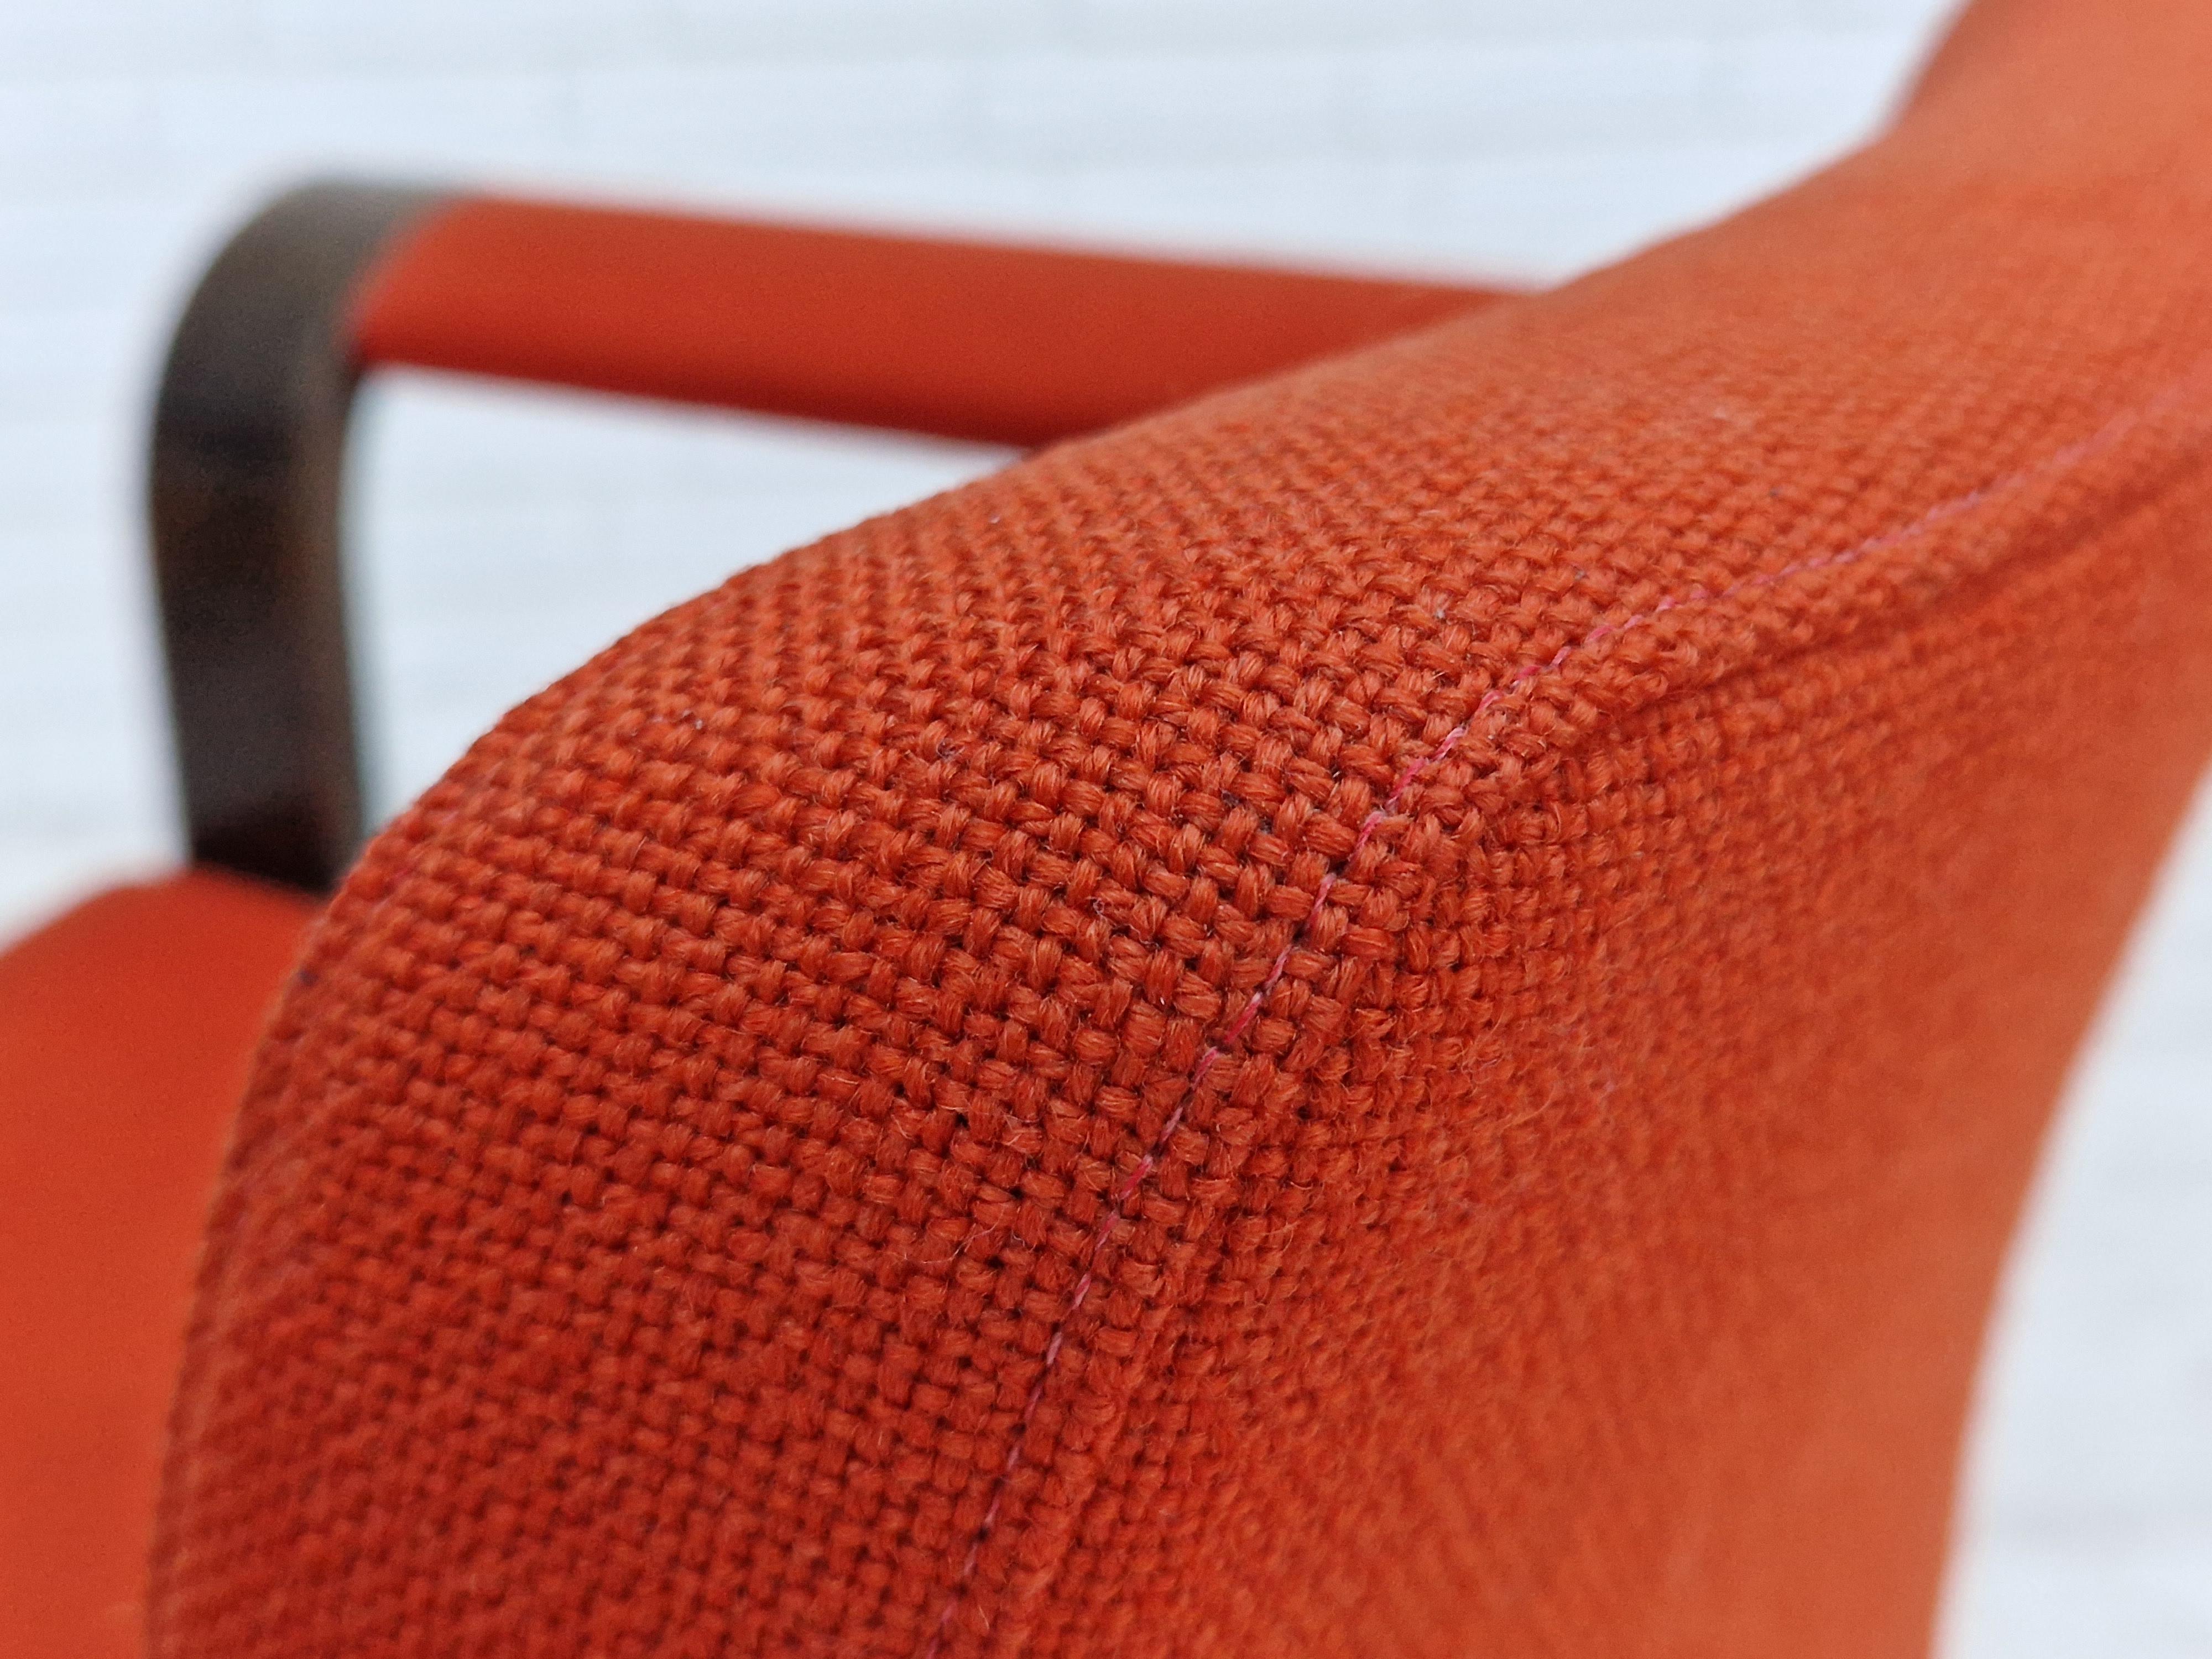 Années 1980, design danois par Magnus Olesen, paire de fauteuils. Tapisserie originale en laine d'ameublement rouge-orange. Très bon état, sans odeur. Bois courbé en chêne. Fabriqué vers 1980 par un fabricant de meubles danois. La chaise ne présente